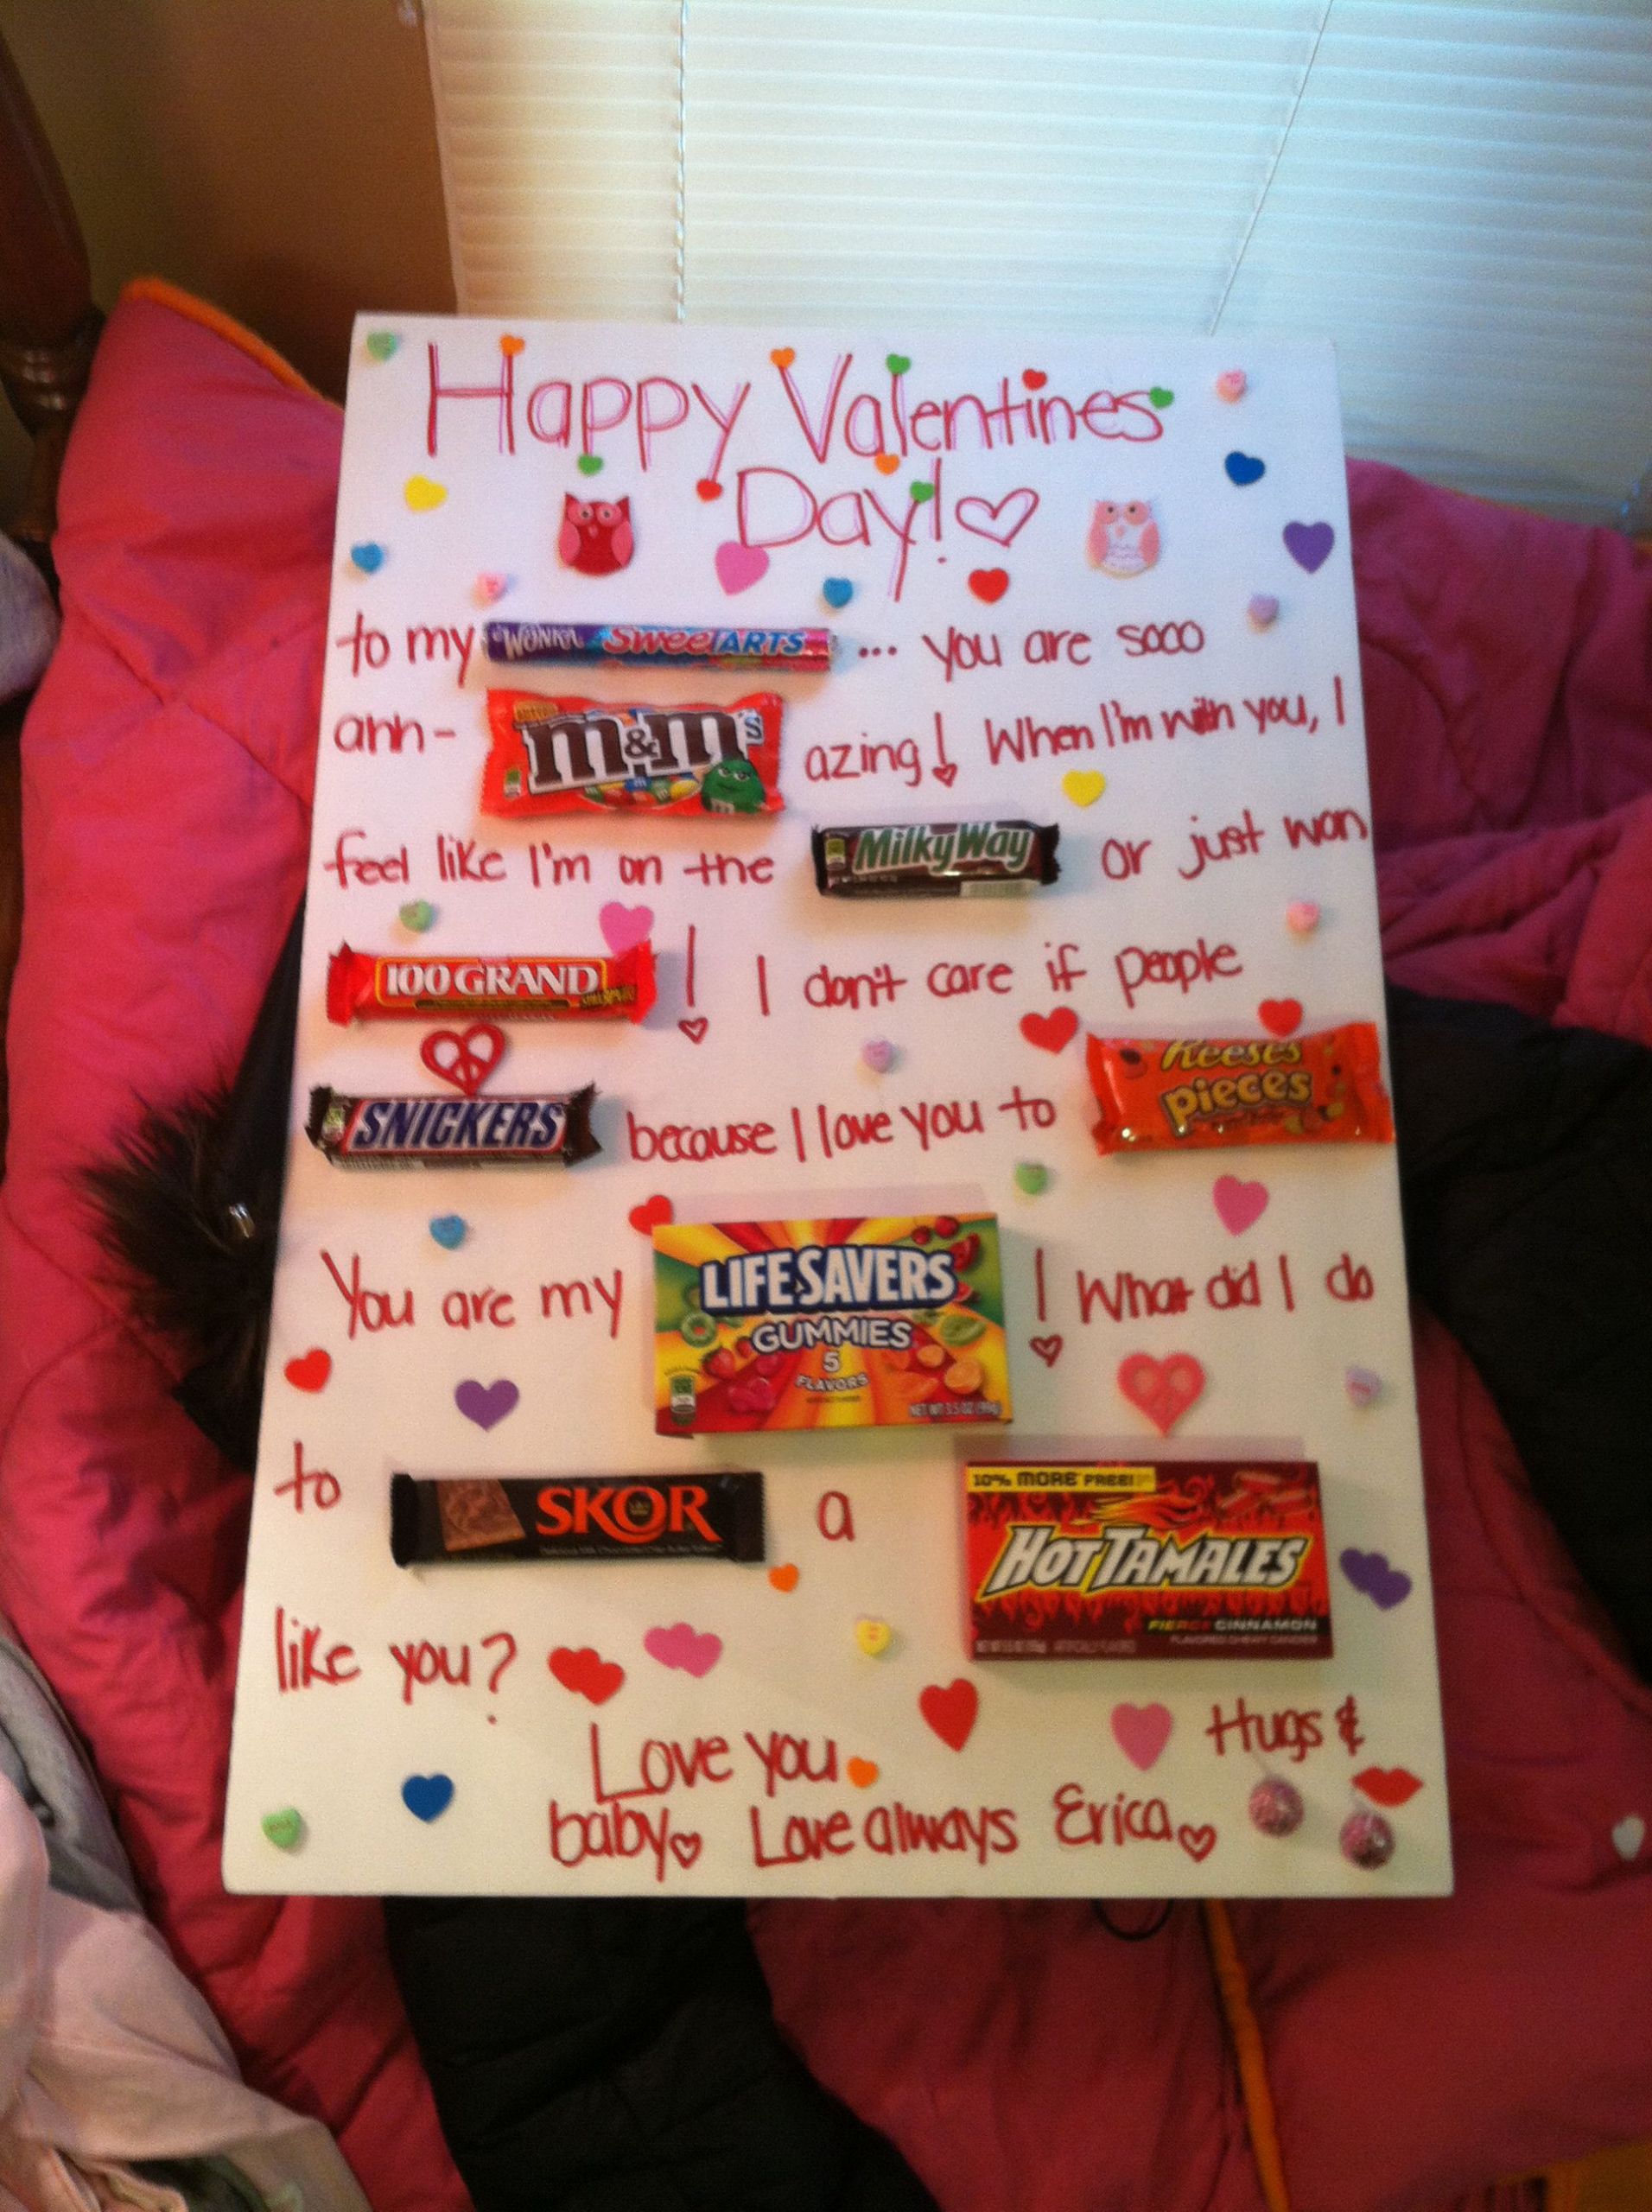 Valentines Day Ideas Gift Boyfriend
 Valentines for him